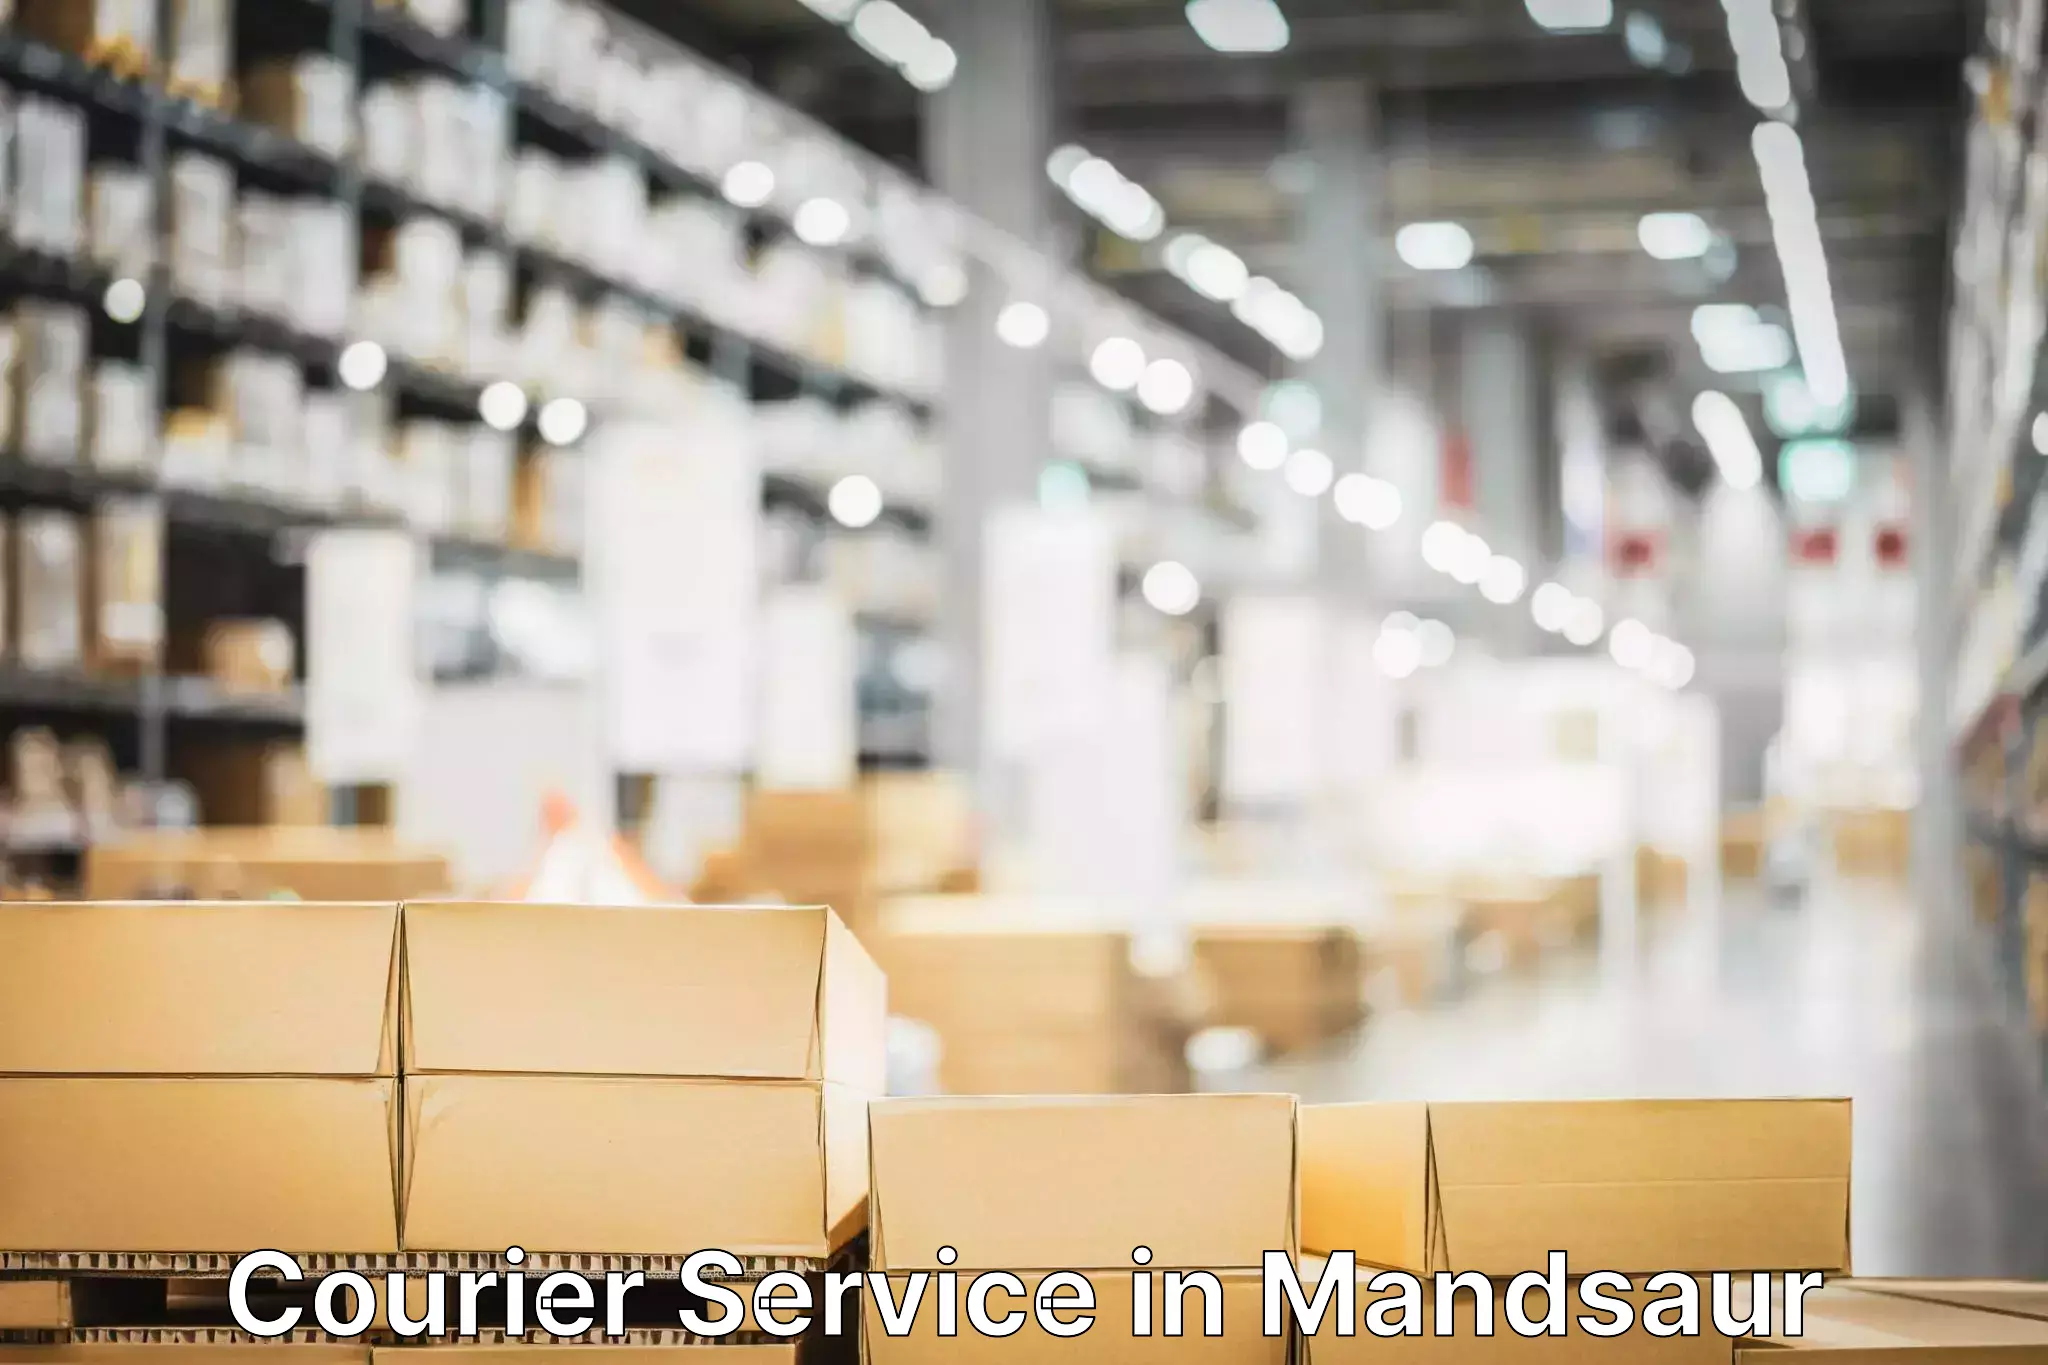 Premium delivery services in Mandsaur